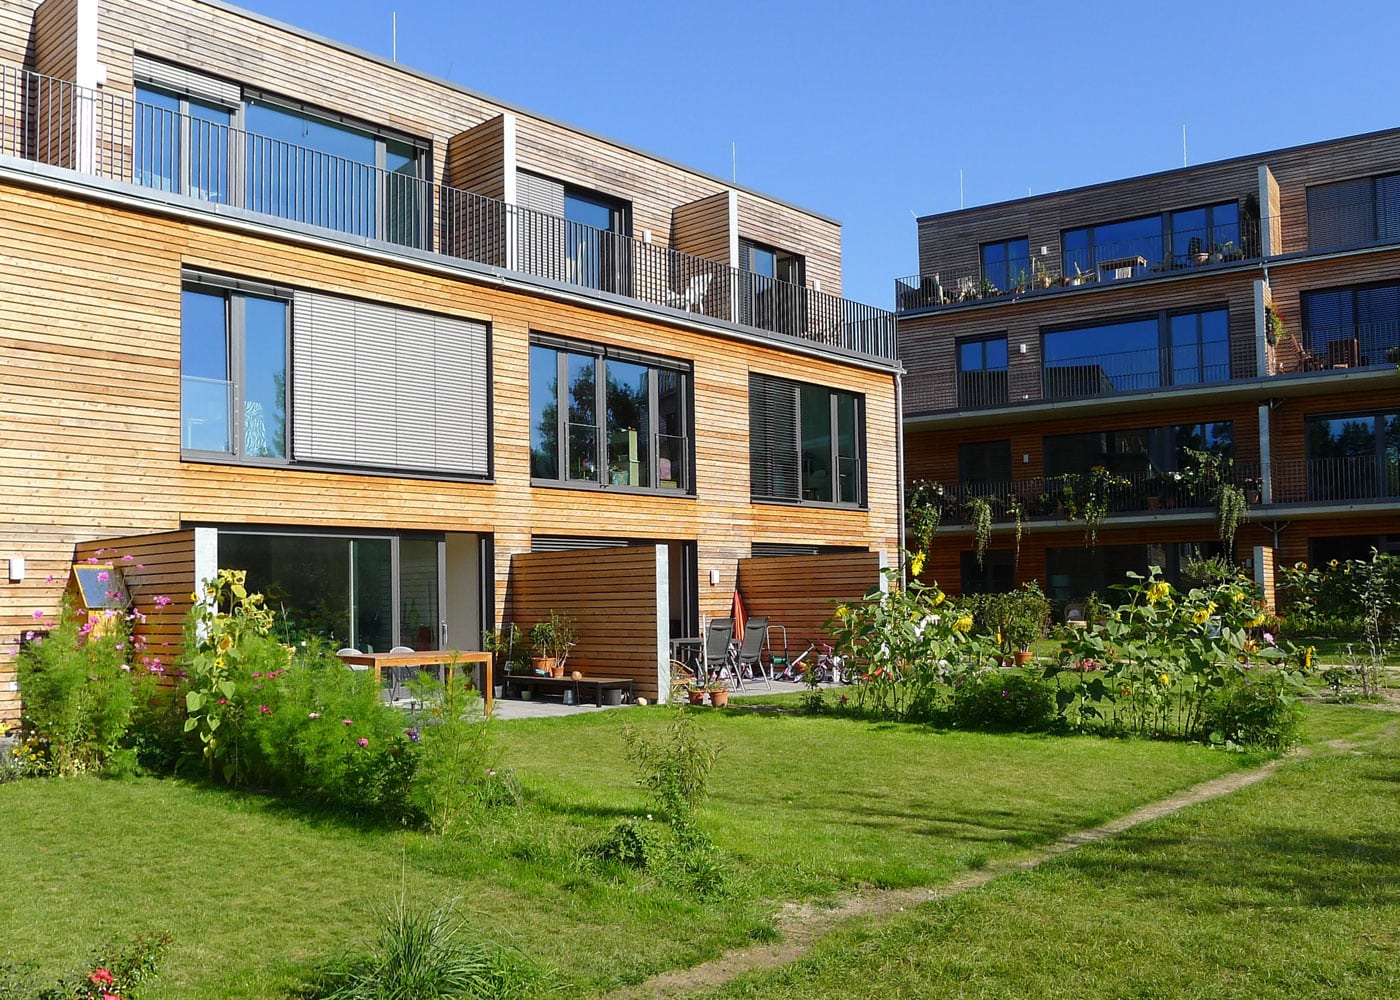 Statt Einfamilienhaus Gemeinschaftlich Wohnen Mit Cohousing Berlin // Himbeer